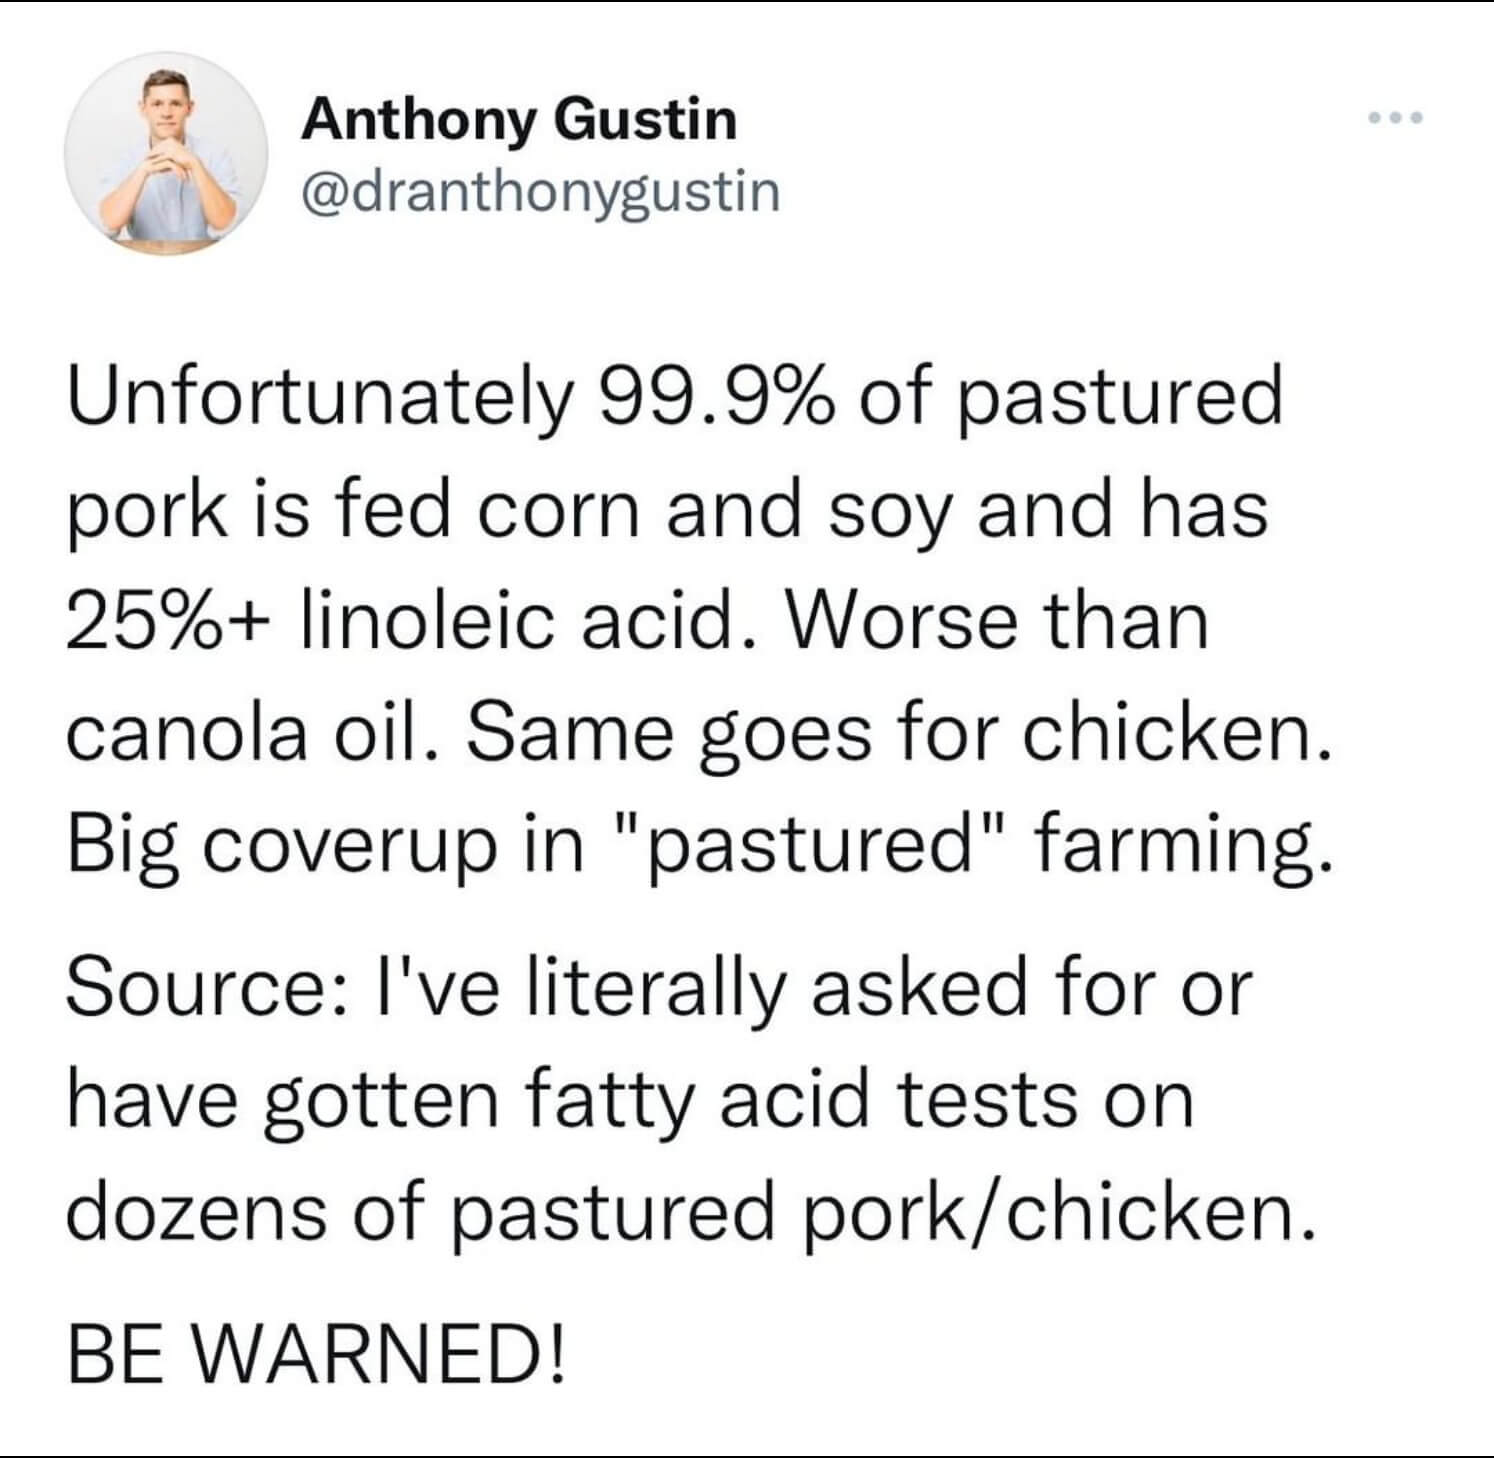 The shocking truth behind pastured chicken and pork